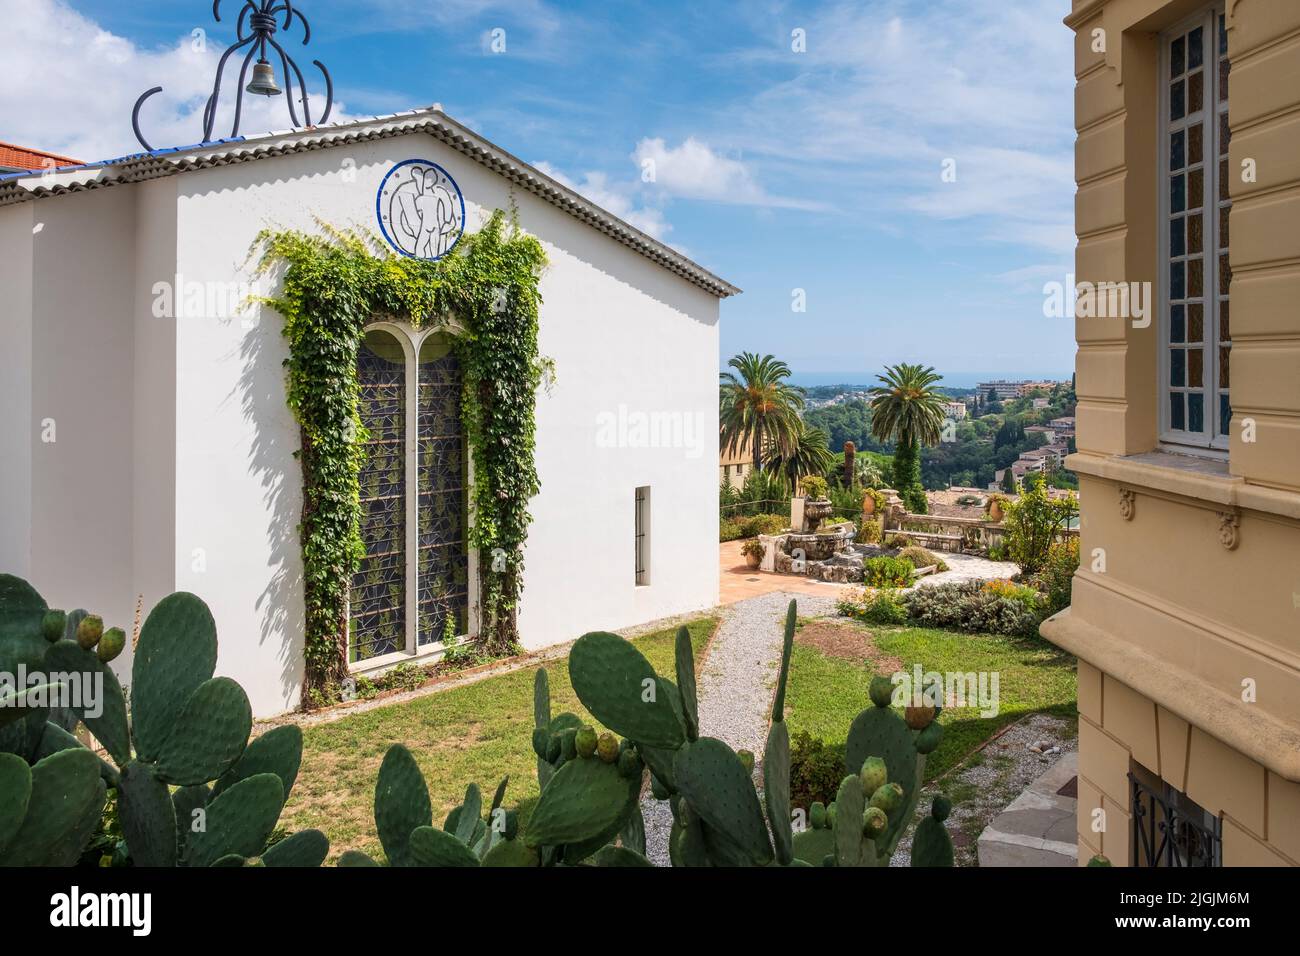 Die Matsteckkapelle Fassade, Vence, Cot D'Azur, Frankreich Stockfoto